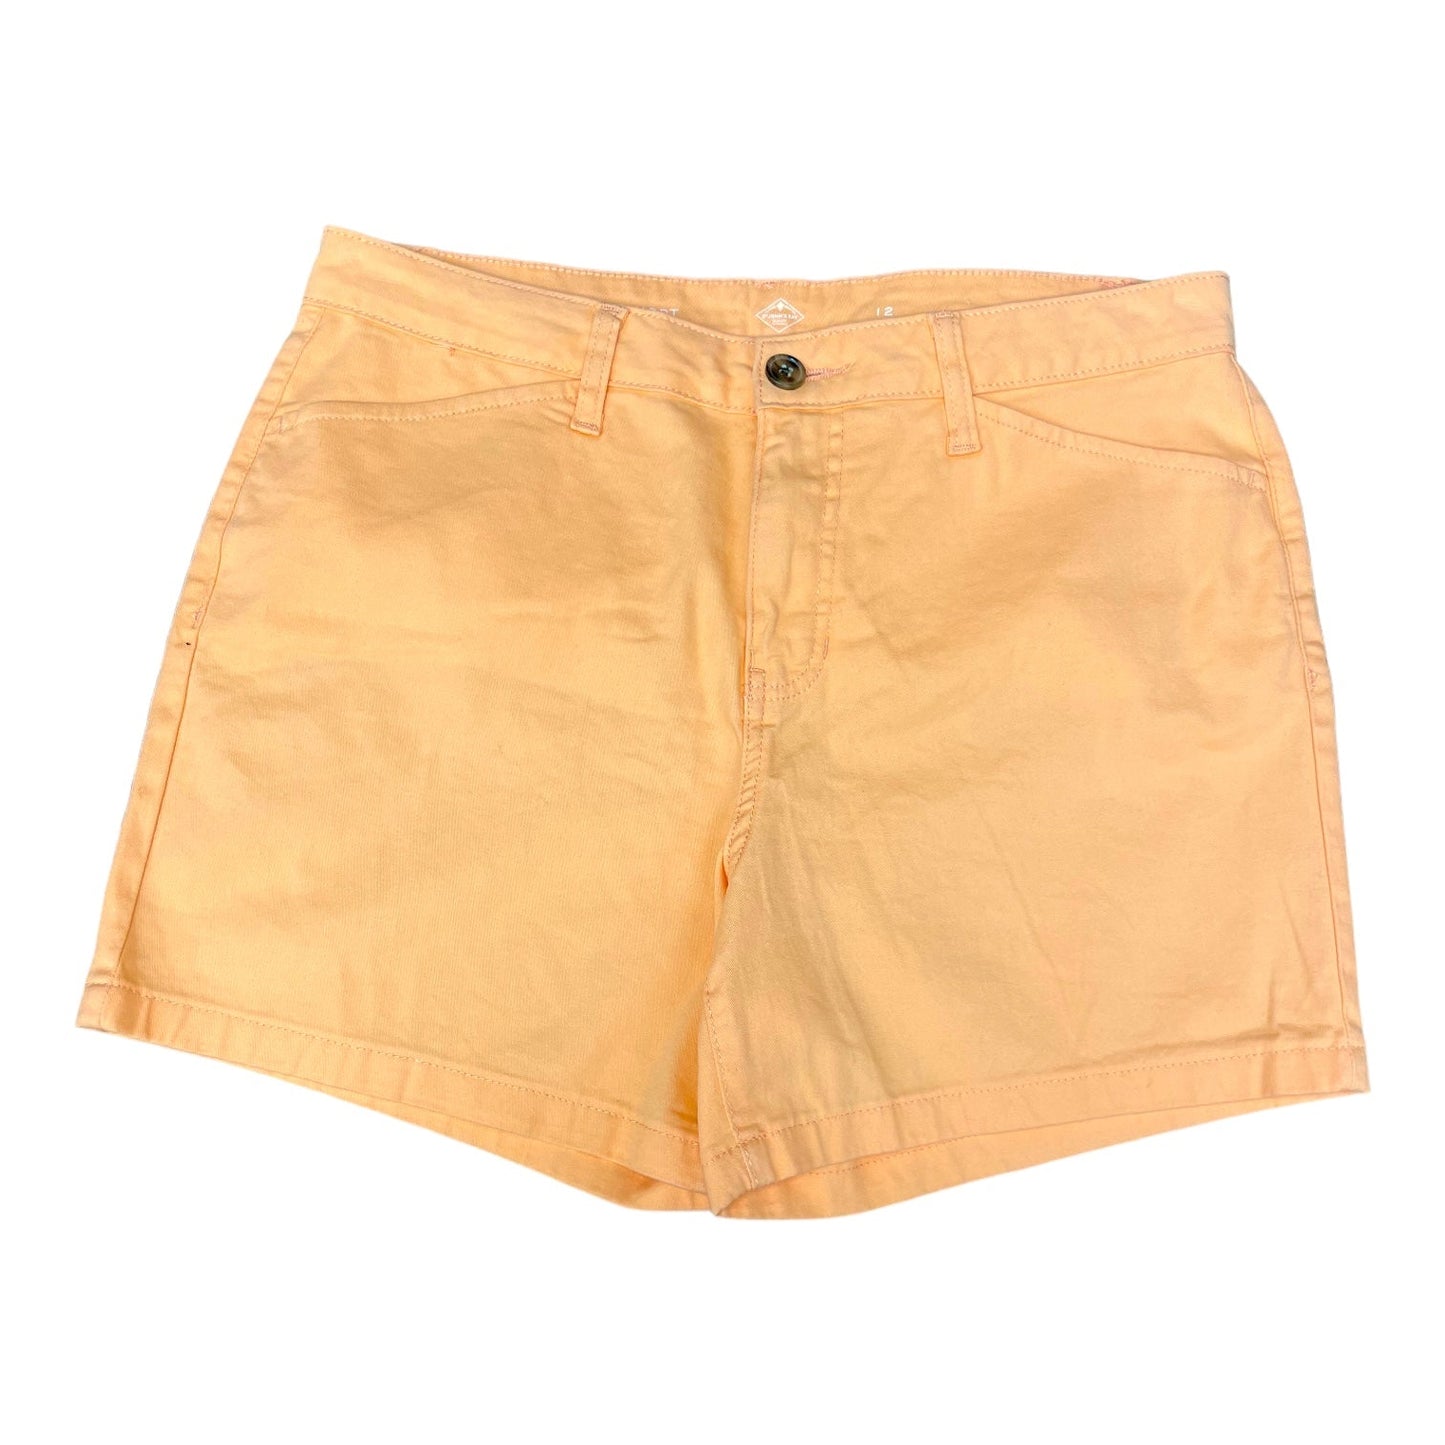 Orange Shorts St Johns Bay, Size 12